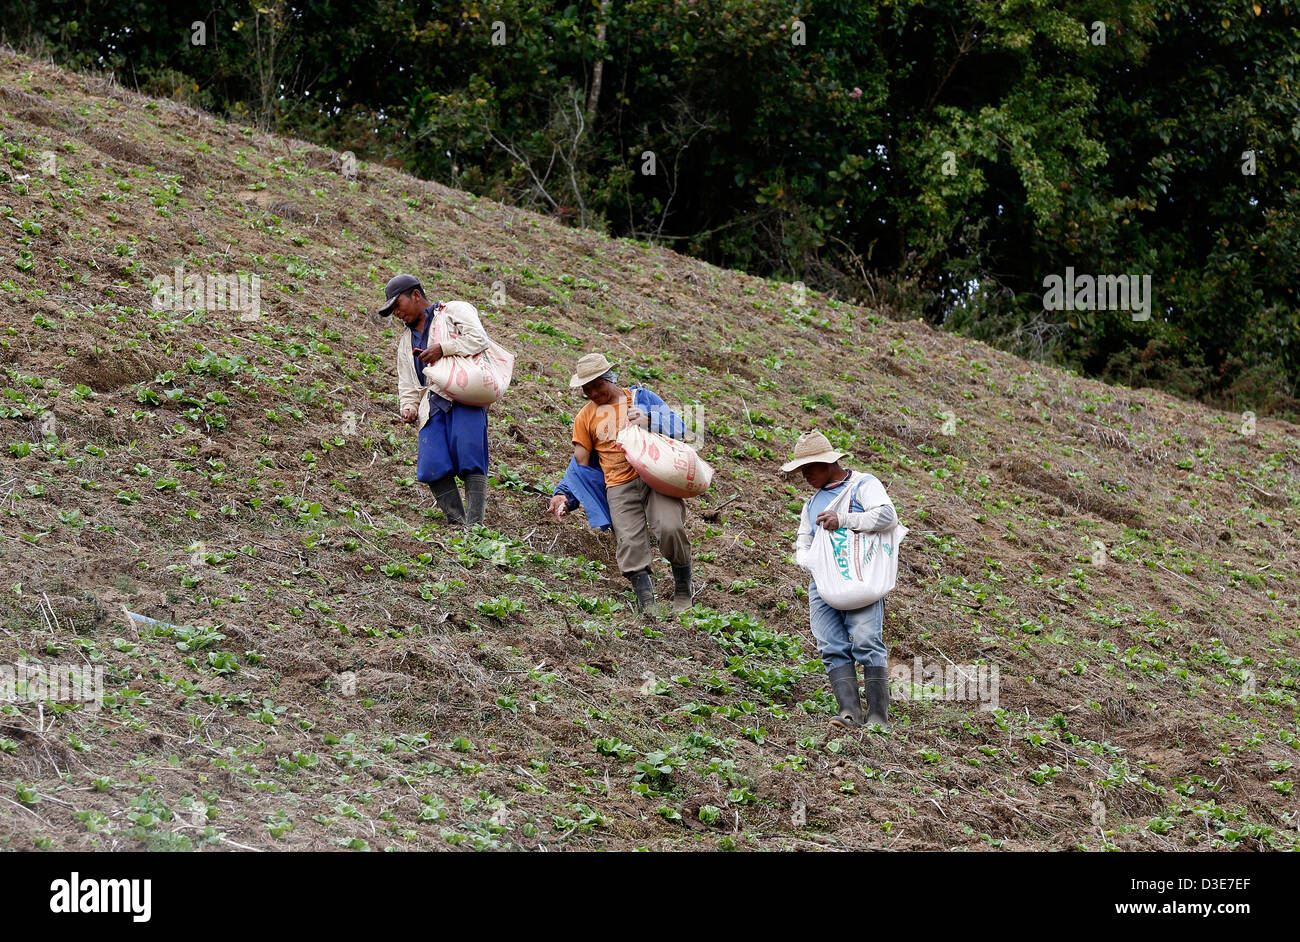 Los trabajadores difundiendo el fertilizante a mano sobre una empinada ladera cultivada, Guadalupe, Panamá Foto de stock